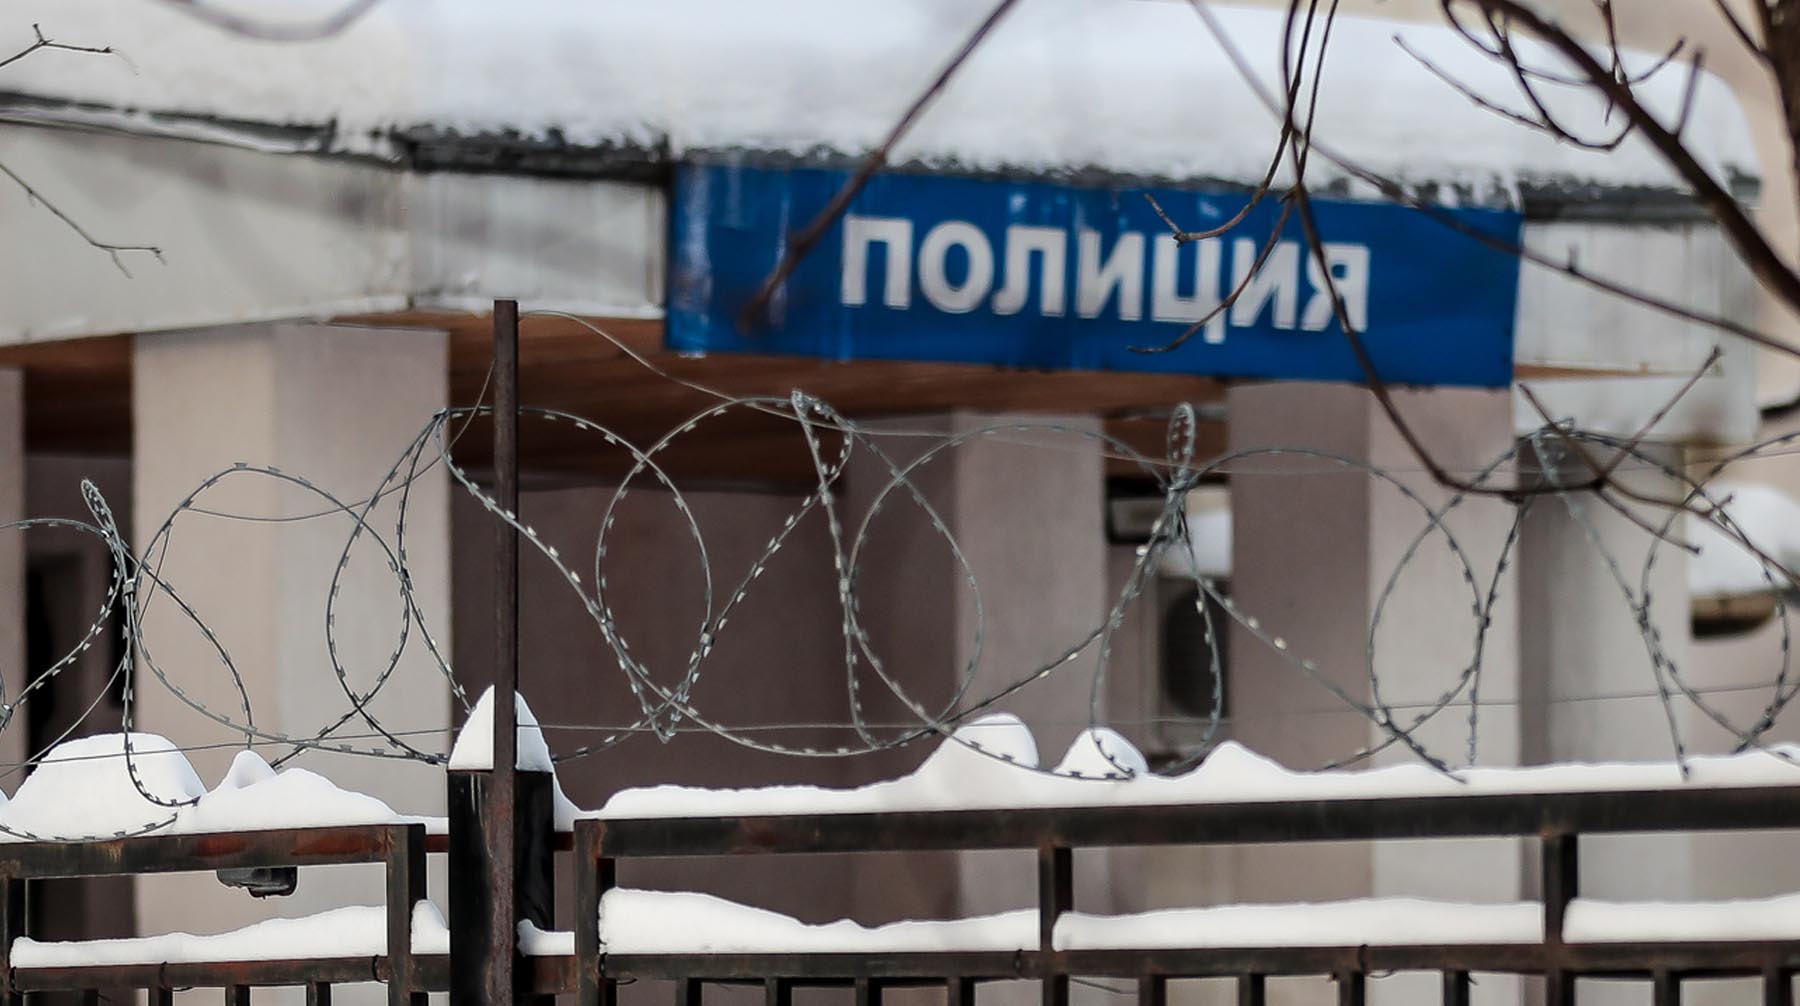 Виктор Мохов отбыл в колонии 17 лет по обвинению в похищении и удержании двух девушек Фото: © Global Look Press / Дмитрий Голубович